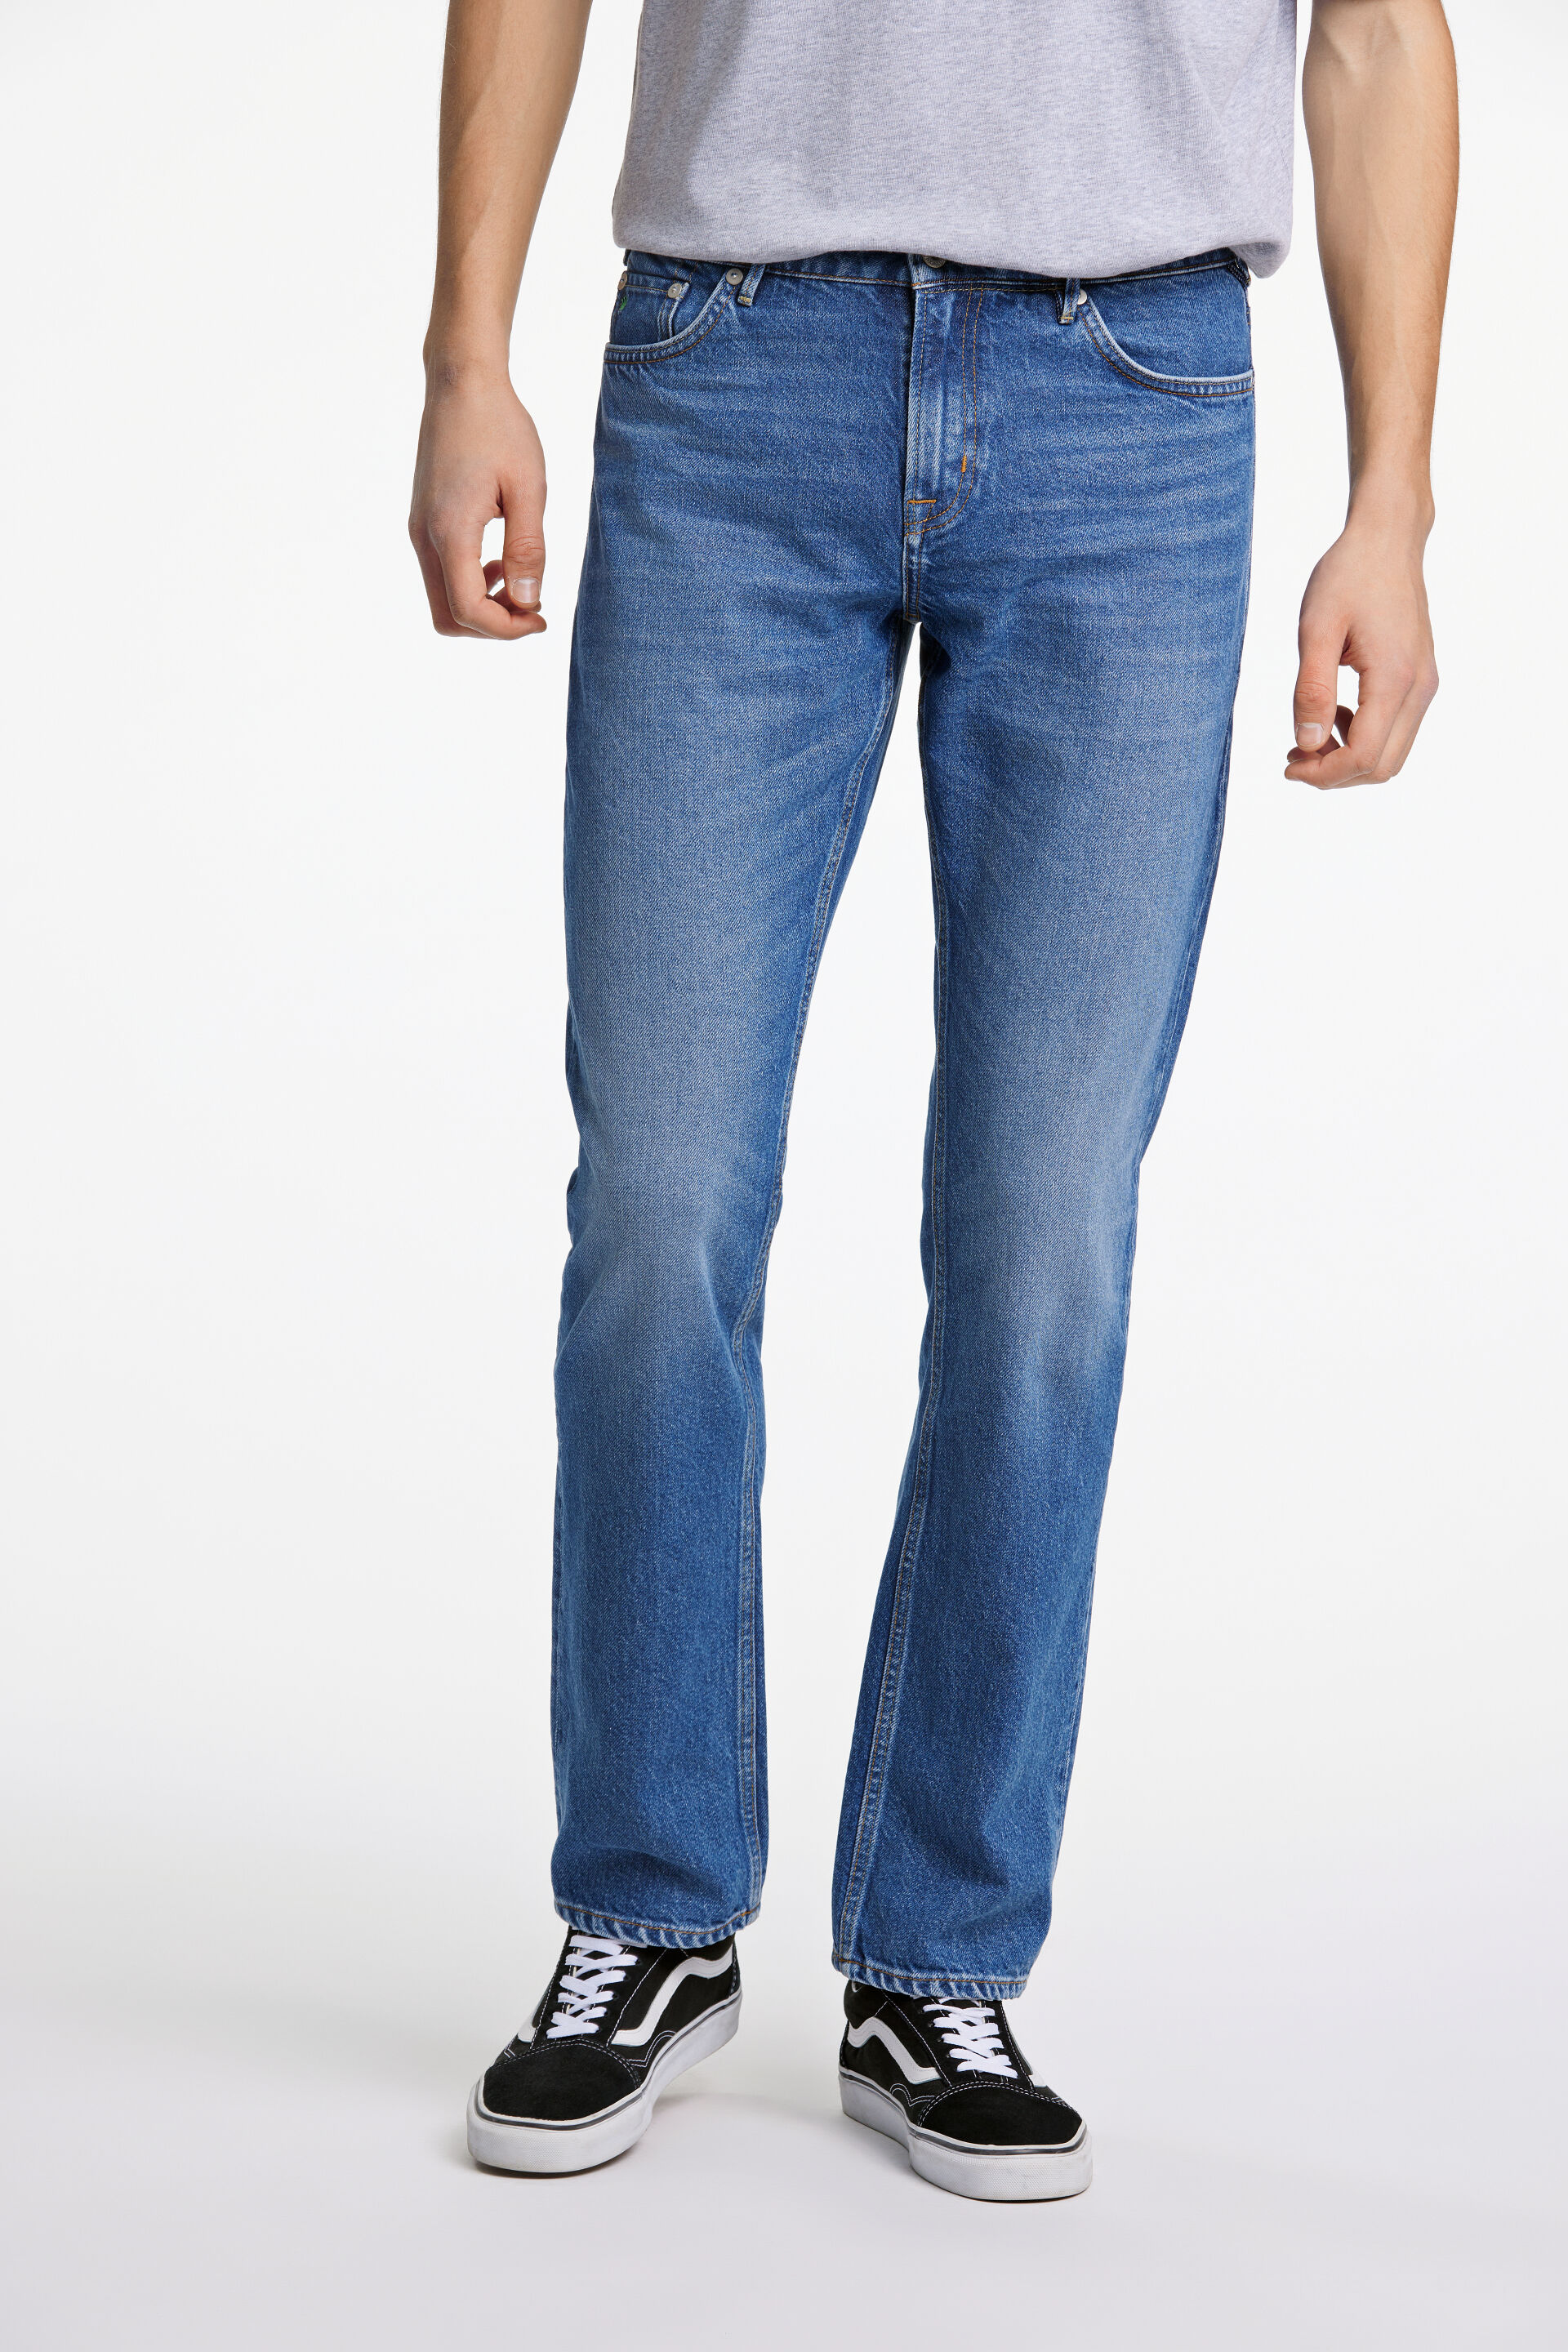 Junk de Luxe  Jeans 60-025024